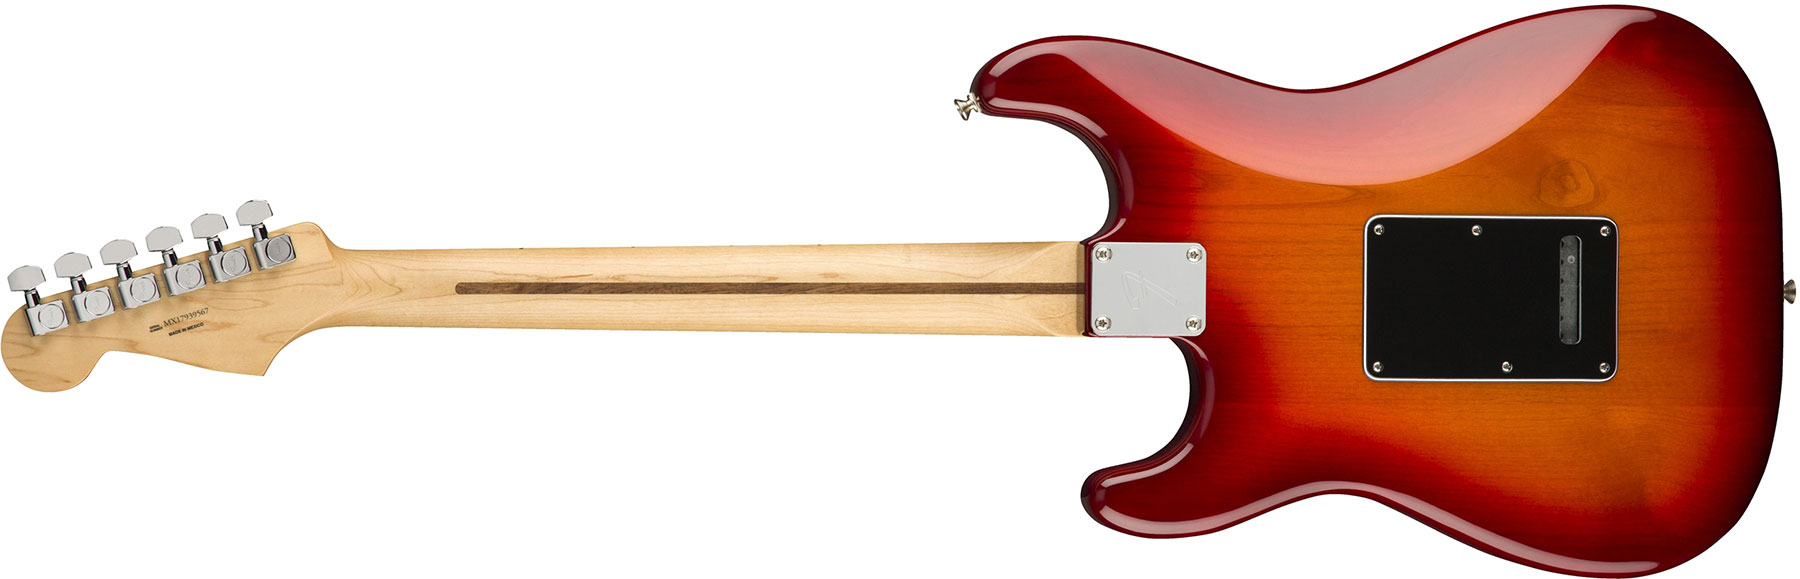 Fender Strat Player Plus Top Mex Hss Mn - Aged Cherry Burst - Guitare Électrique Forme Str - Variation 1